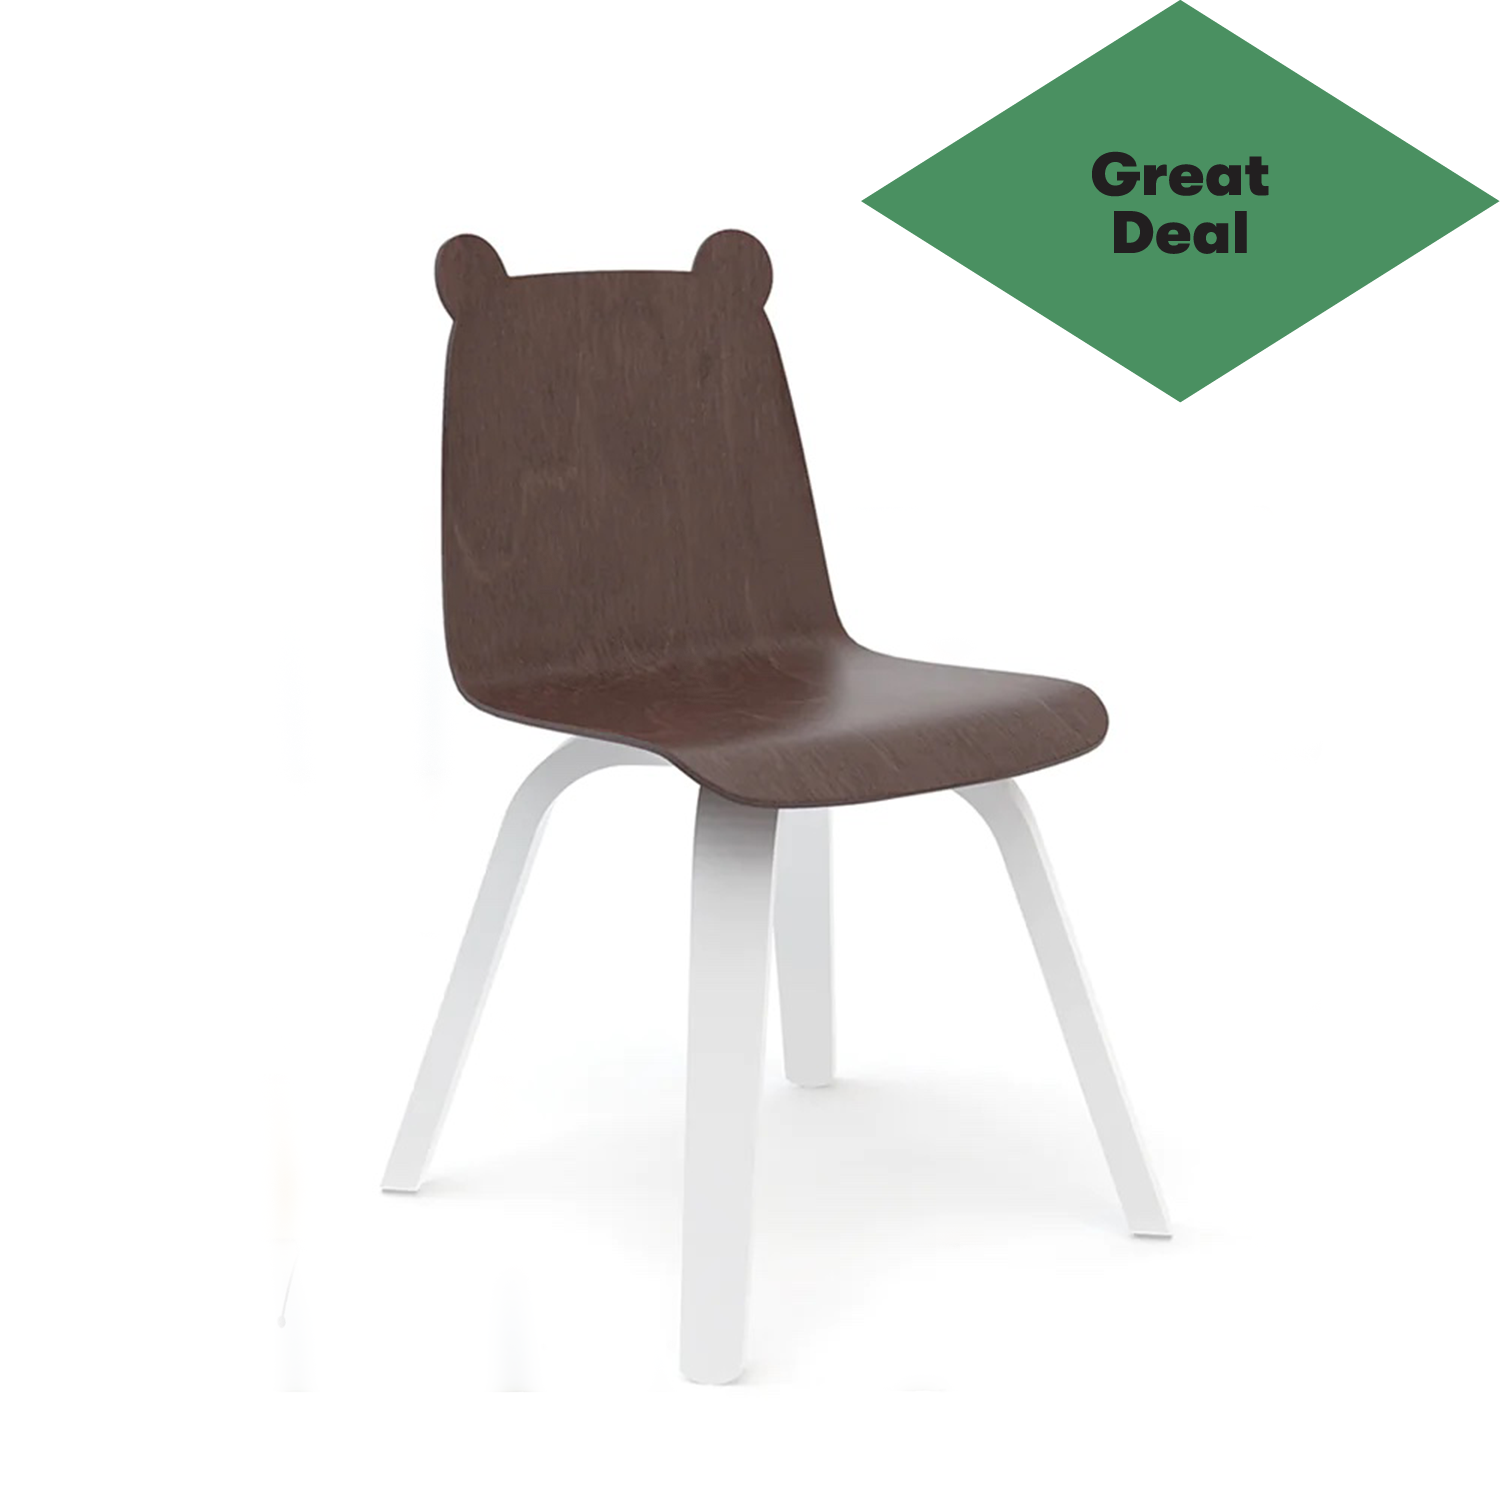 bear chair